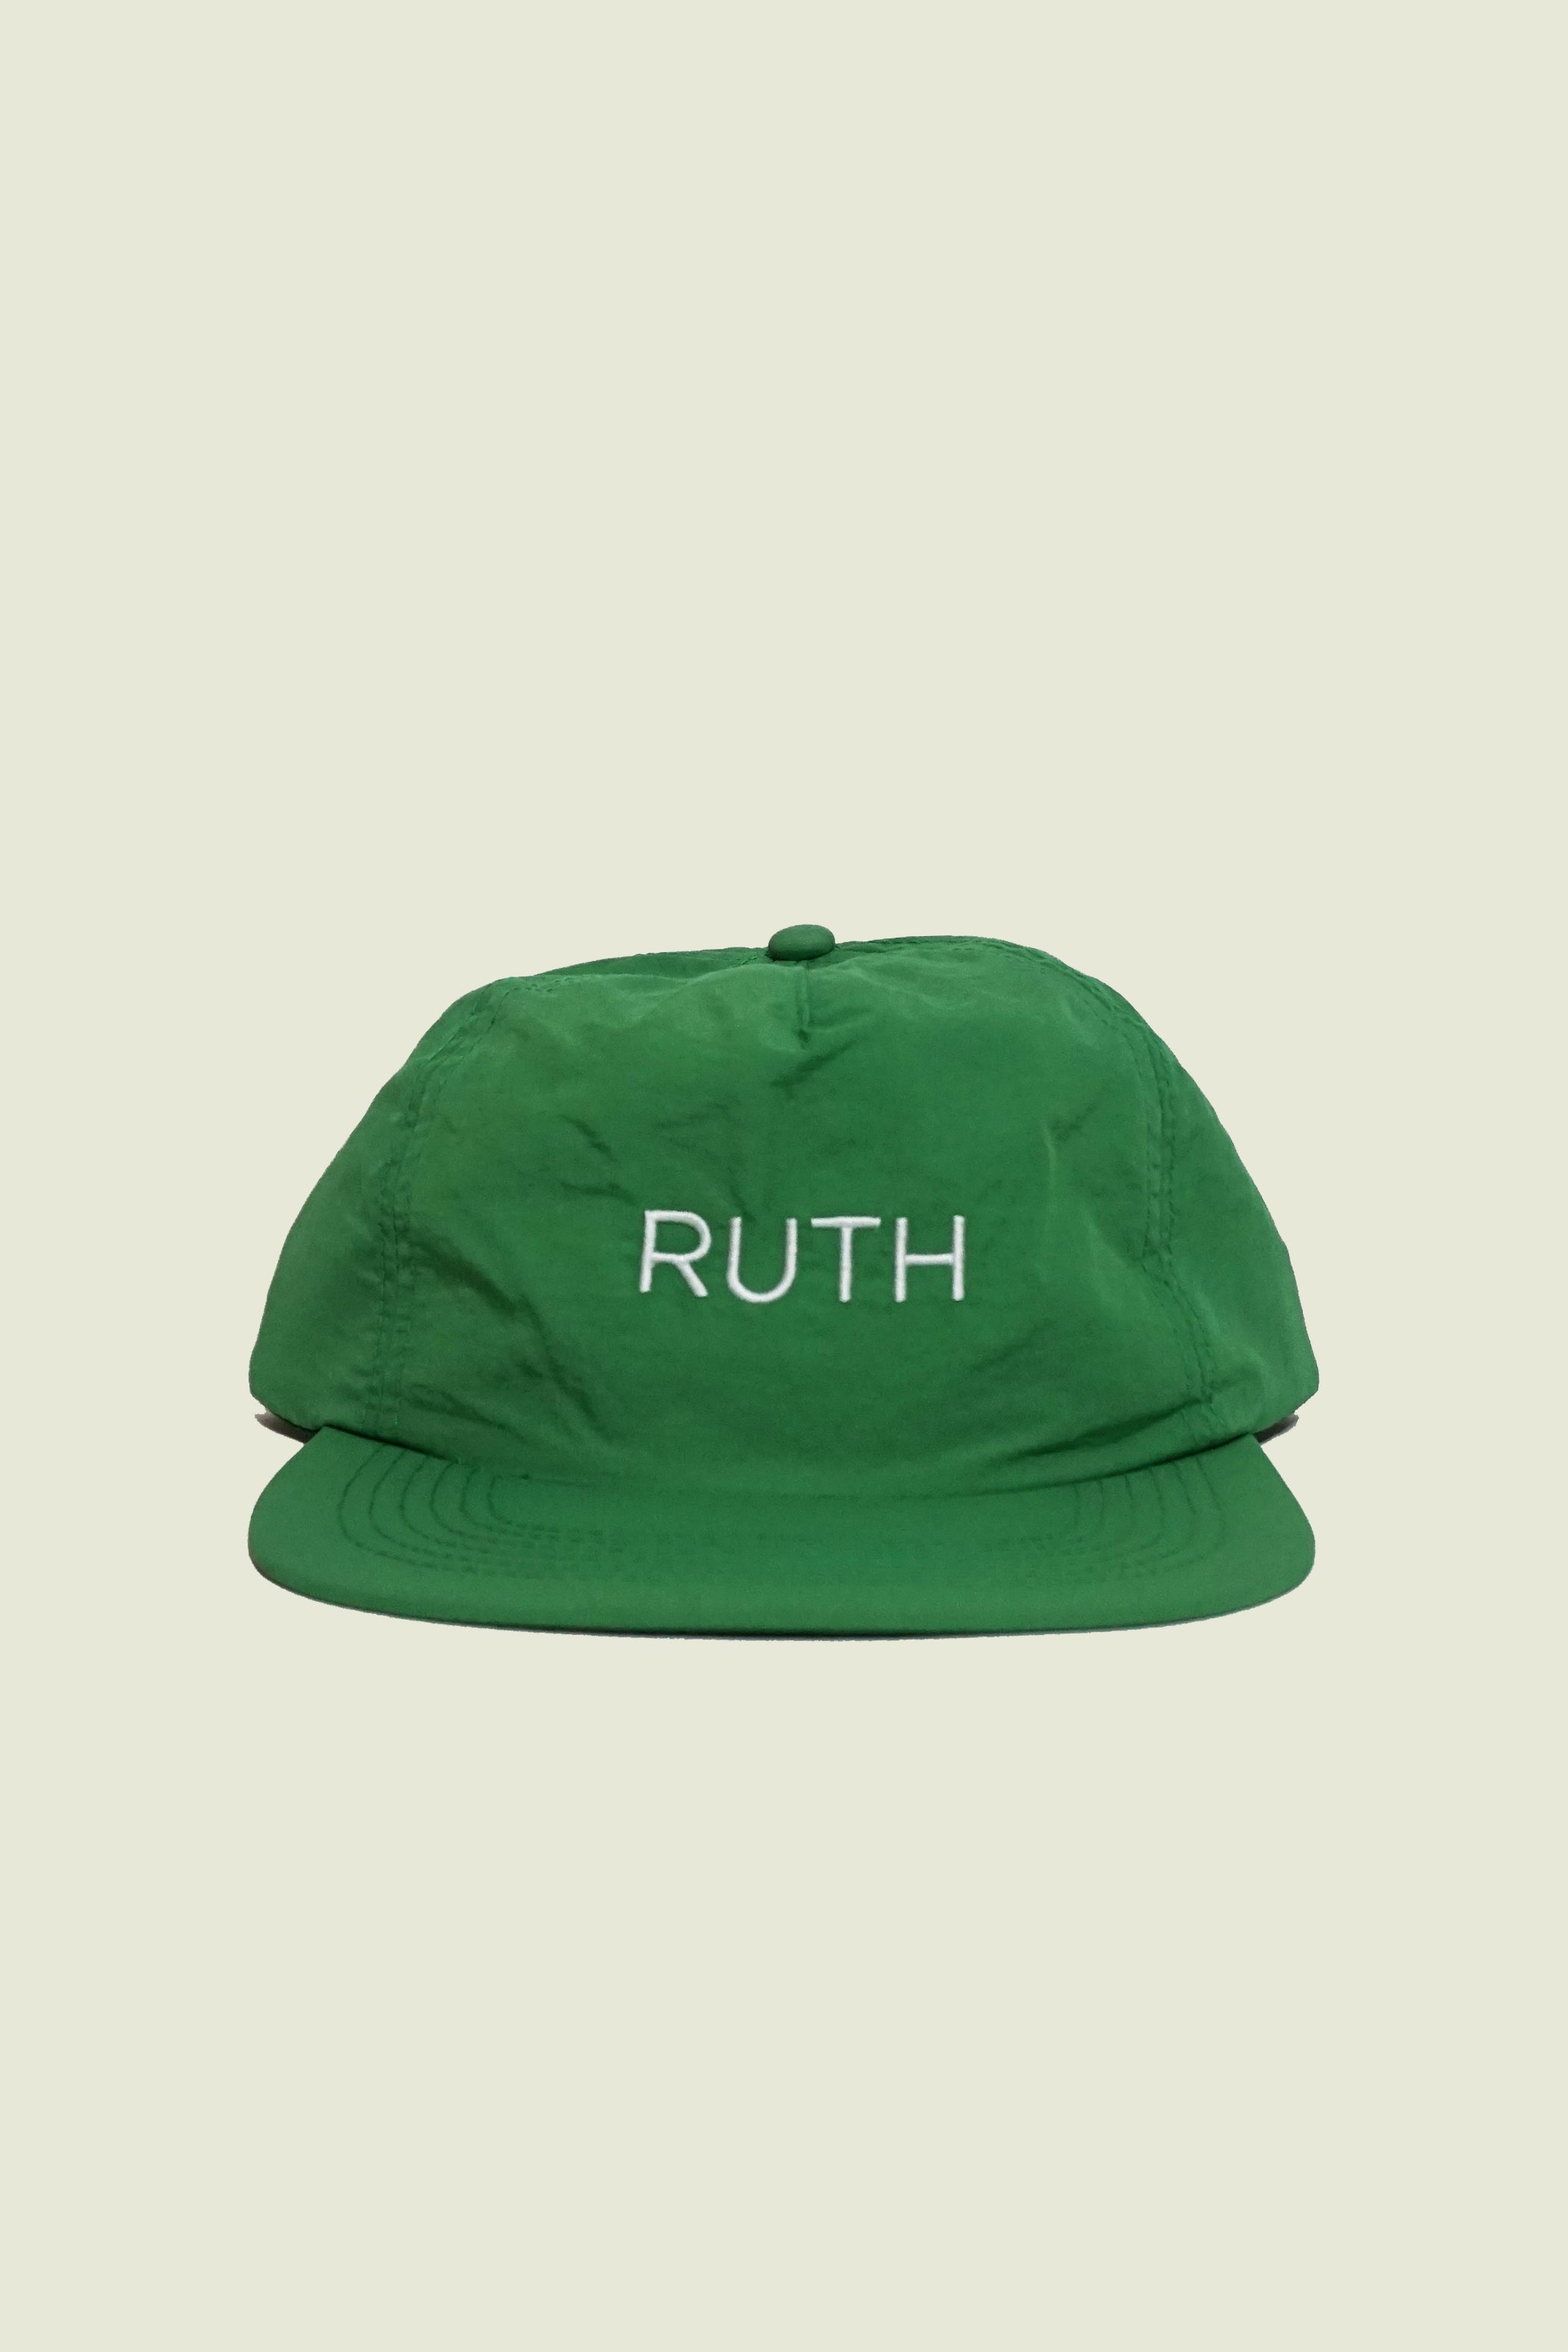 Ruth Cap